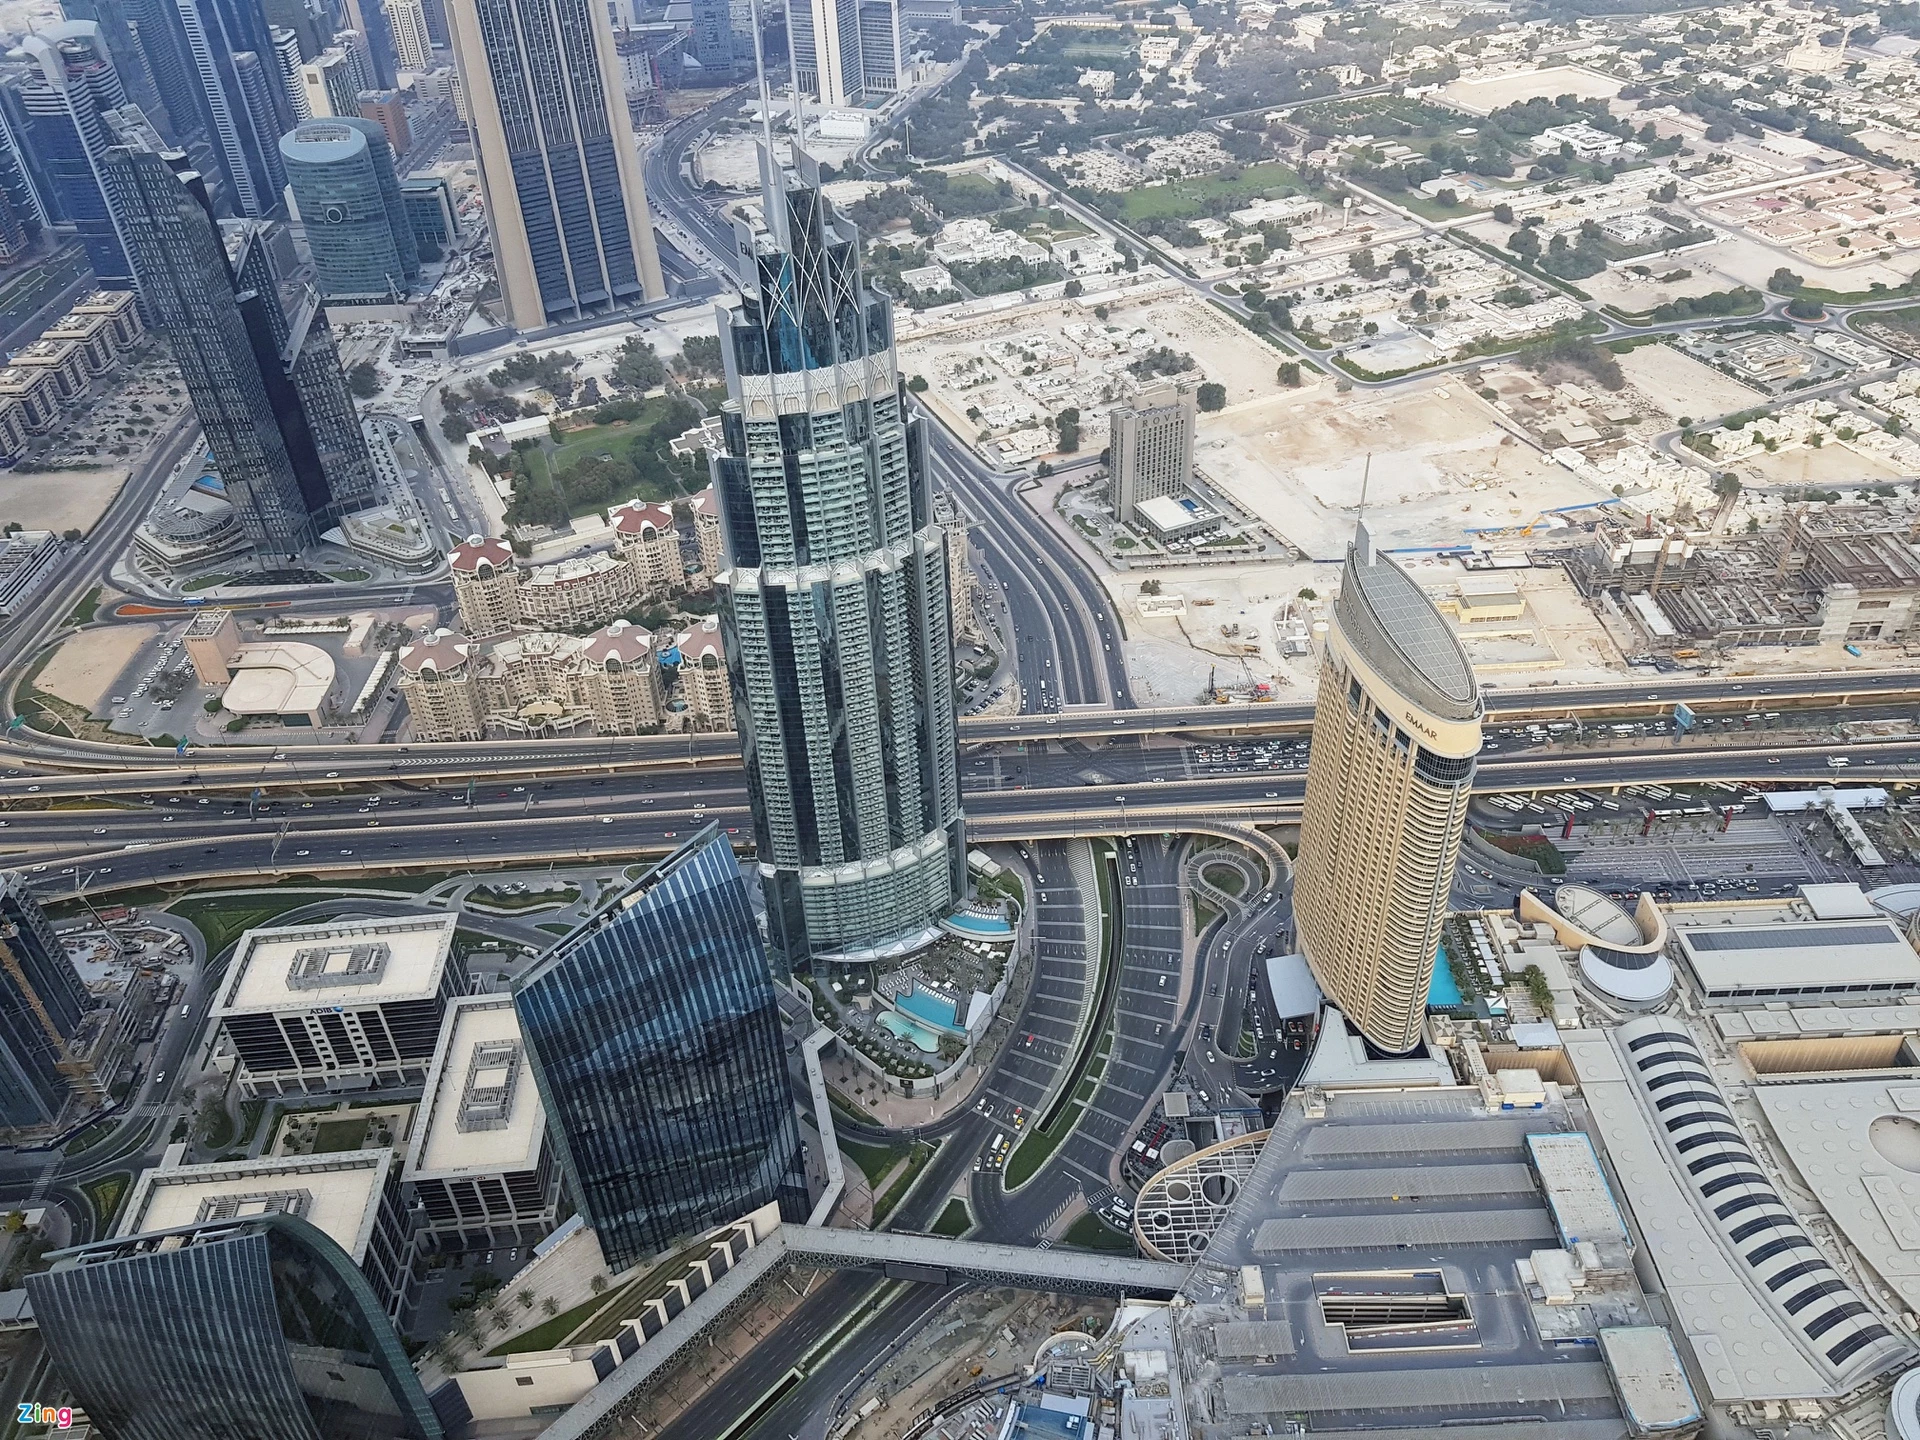 Các tiểu Vương quốc Ả rập Thống nhất (UAE) là liên bang gồm 7 tiểu vương quốc gồm Abu Dhabi, Ajman, Dubai, Fujairah, Sharjah, Ras al Khaimah và Umm al Quwain. Mỗi tiểu vương quốc đều có gia đình hoàng tộc cầm quyền, với văn hóa, truyền thống và phương ngữ khác nhau. Ngày nay, UAE trở thành quốc gia độc lập thống nhất. Thủ đô của UAE là Abu Dhabi. Tuy nhiên, Dubai là thành phố đông dân được du khách biết đến nhiều hơn.